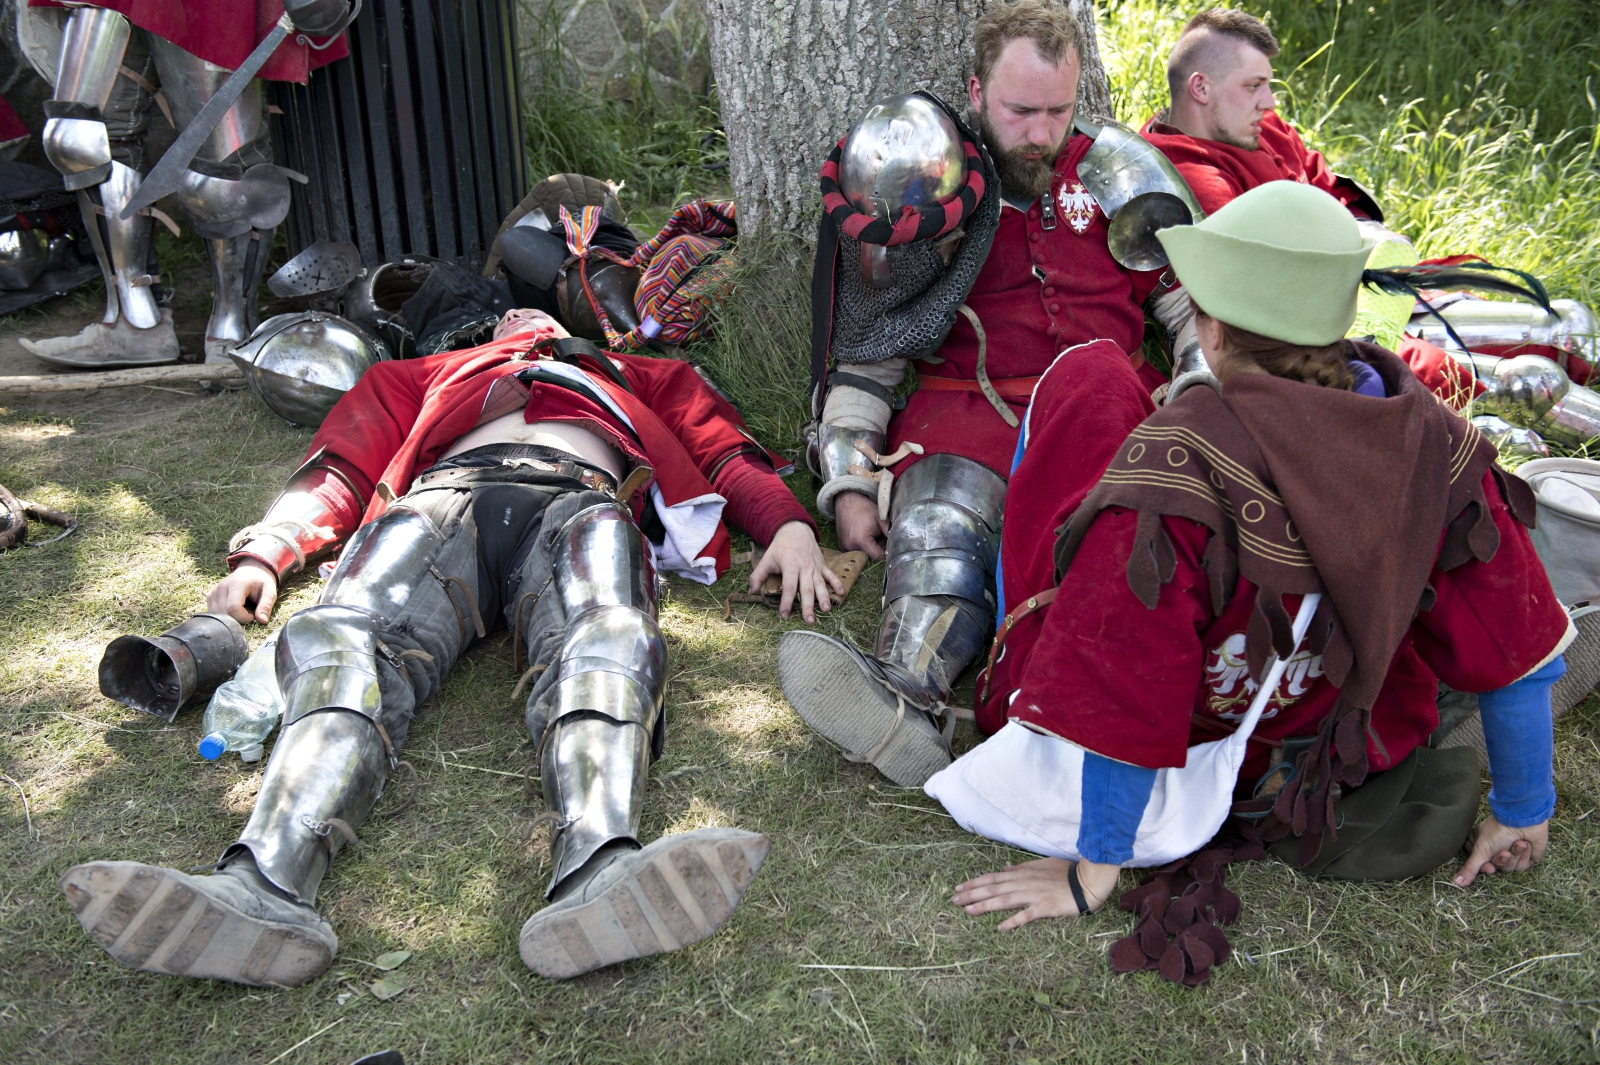 Zmęczeni polscy wojownicy wypoczywają po bitwie z Duńczykami na Międzynarodowym Turnieju Średniowiecznych Sztuk Walki w Spottrup, Dania.